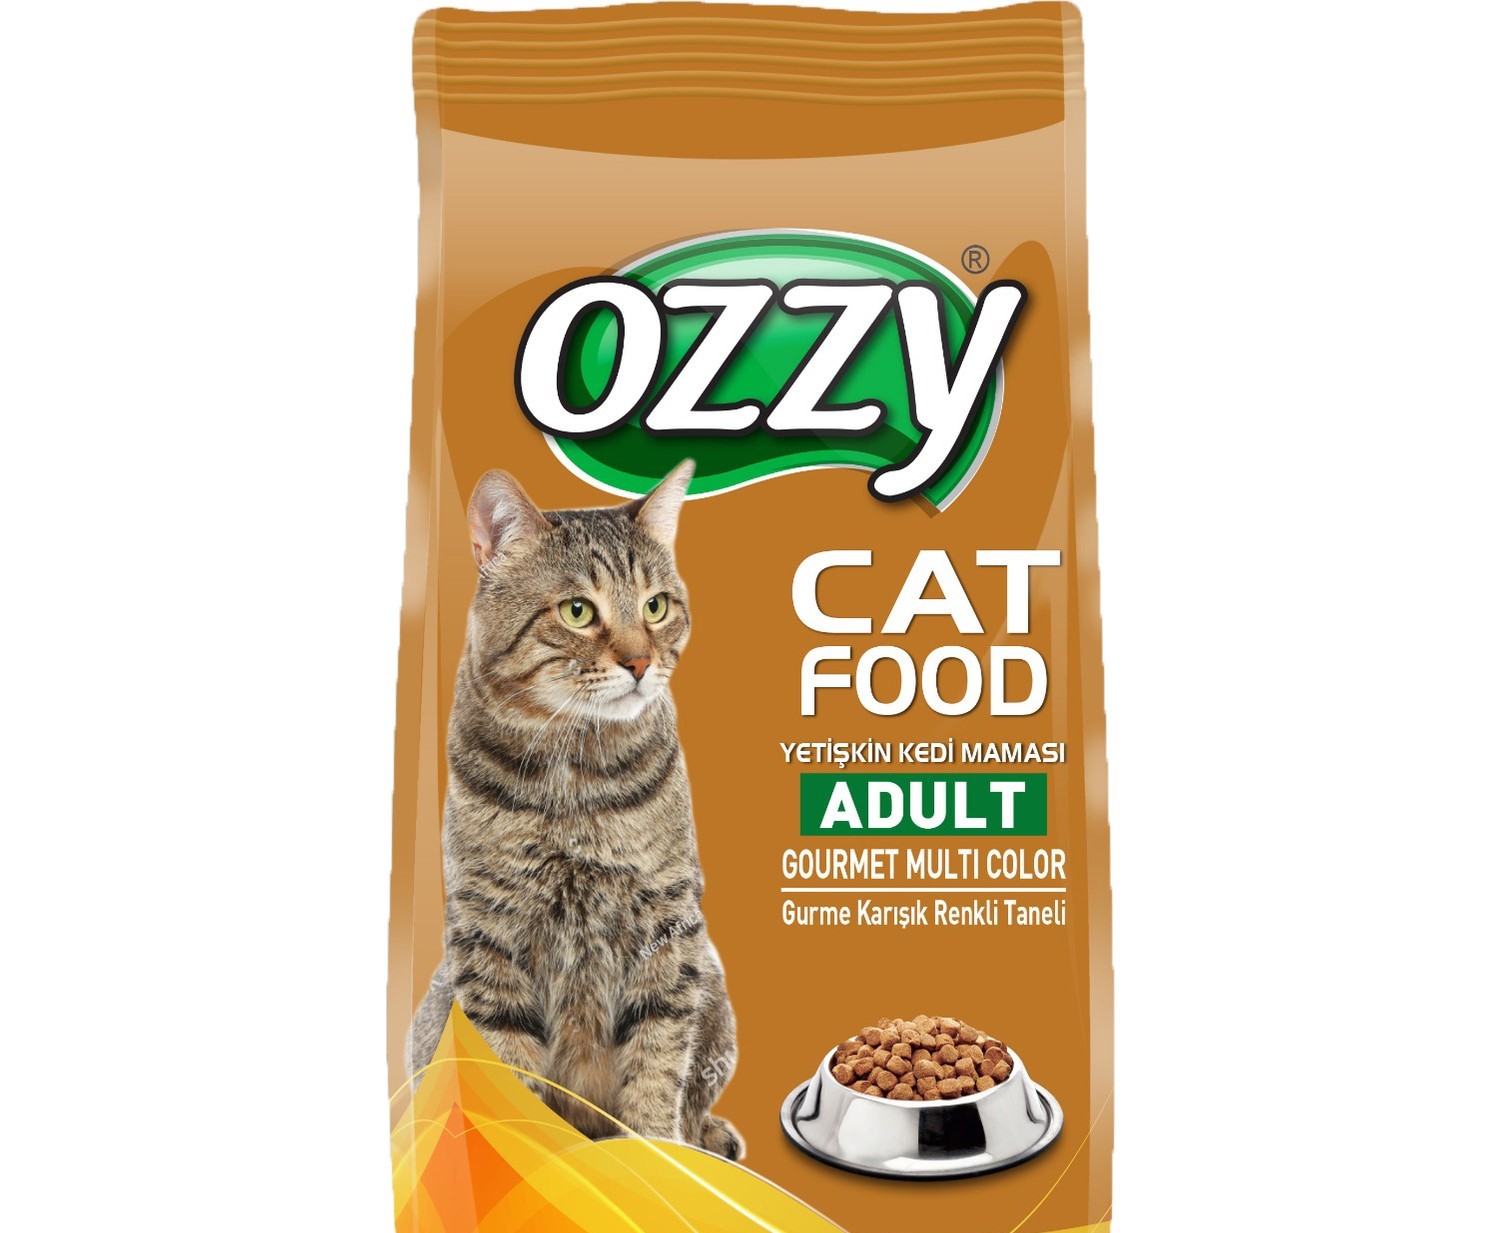 Ozzy Gurme Renkli Taneli Yetişkin Kuru Kedi Maması 5 KG